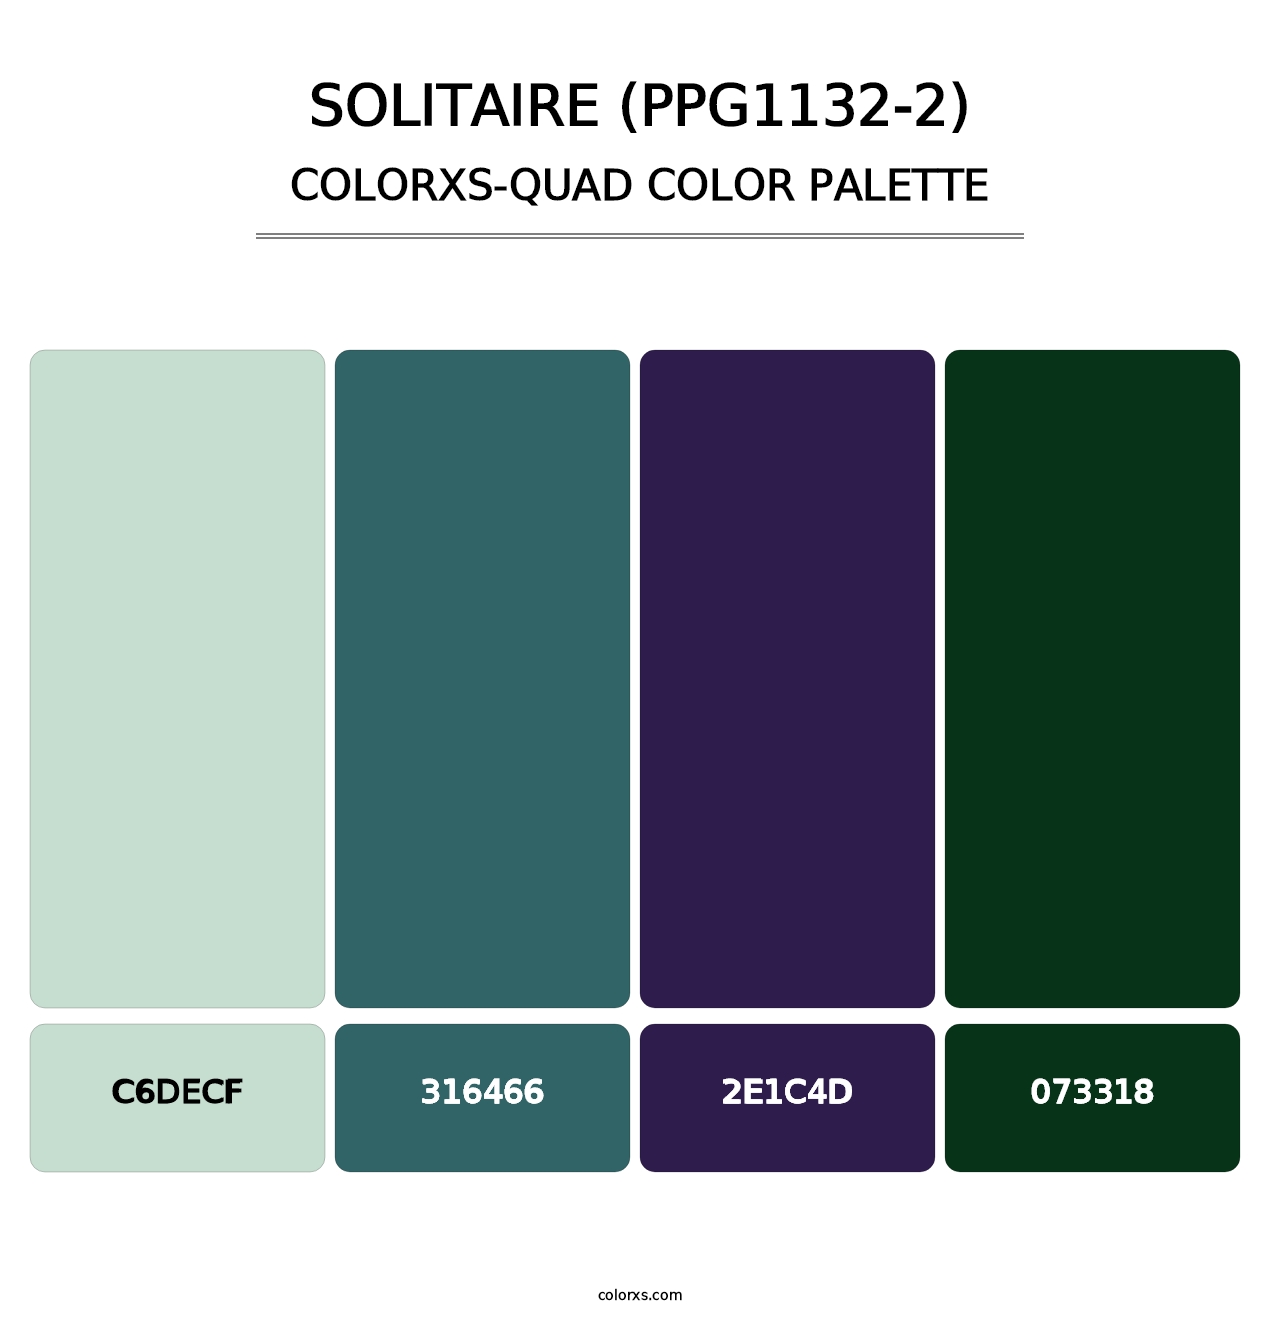 Solitaire (PPG1132-2) - Colorxs Quad Palette